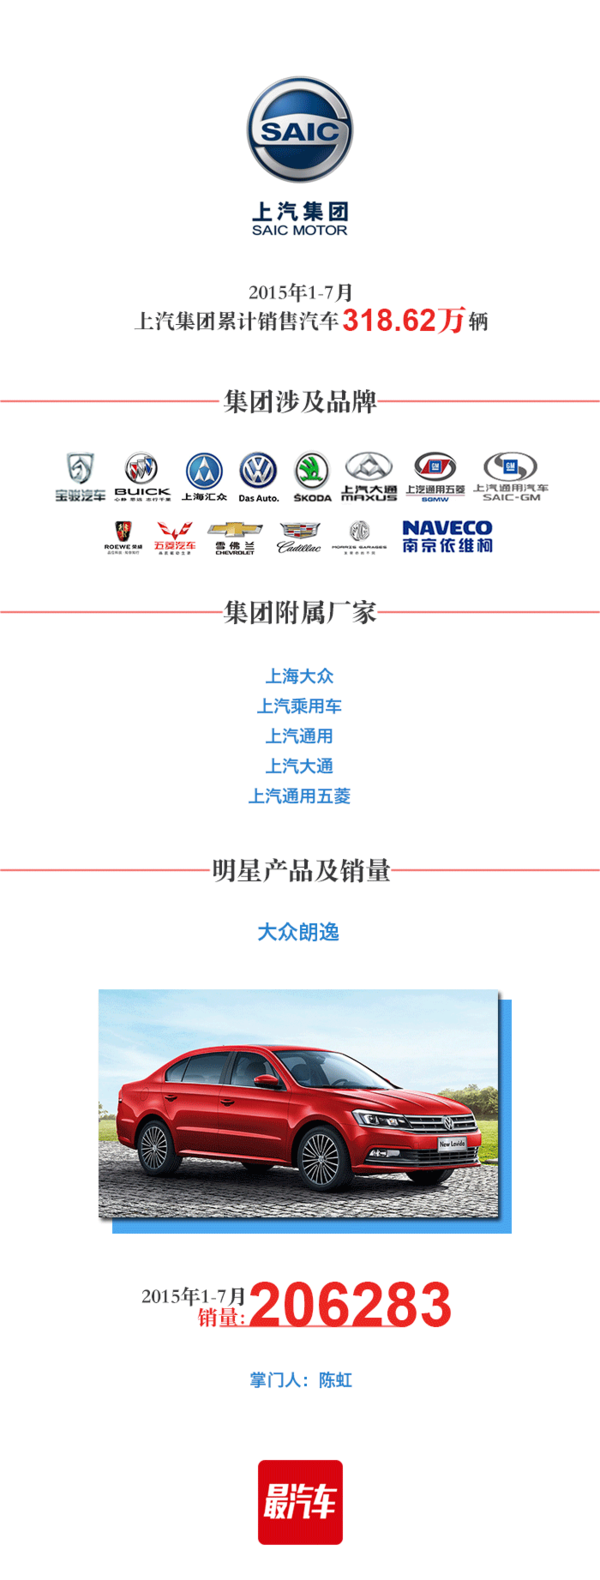 2015年中国汽车集团排行榜Top10 【收藏的亲